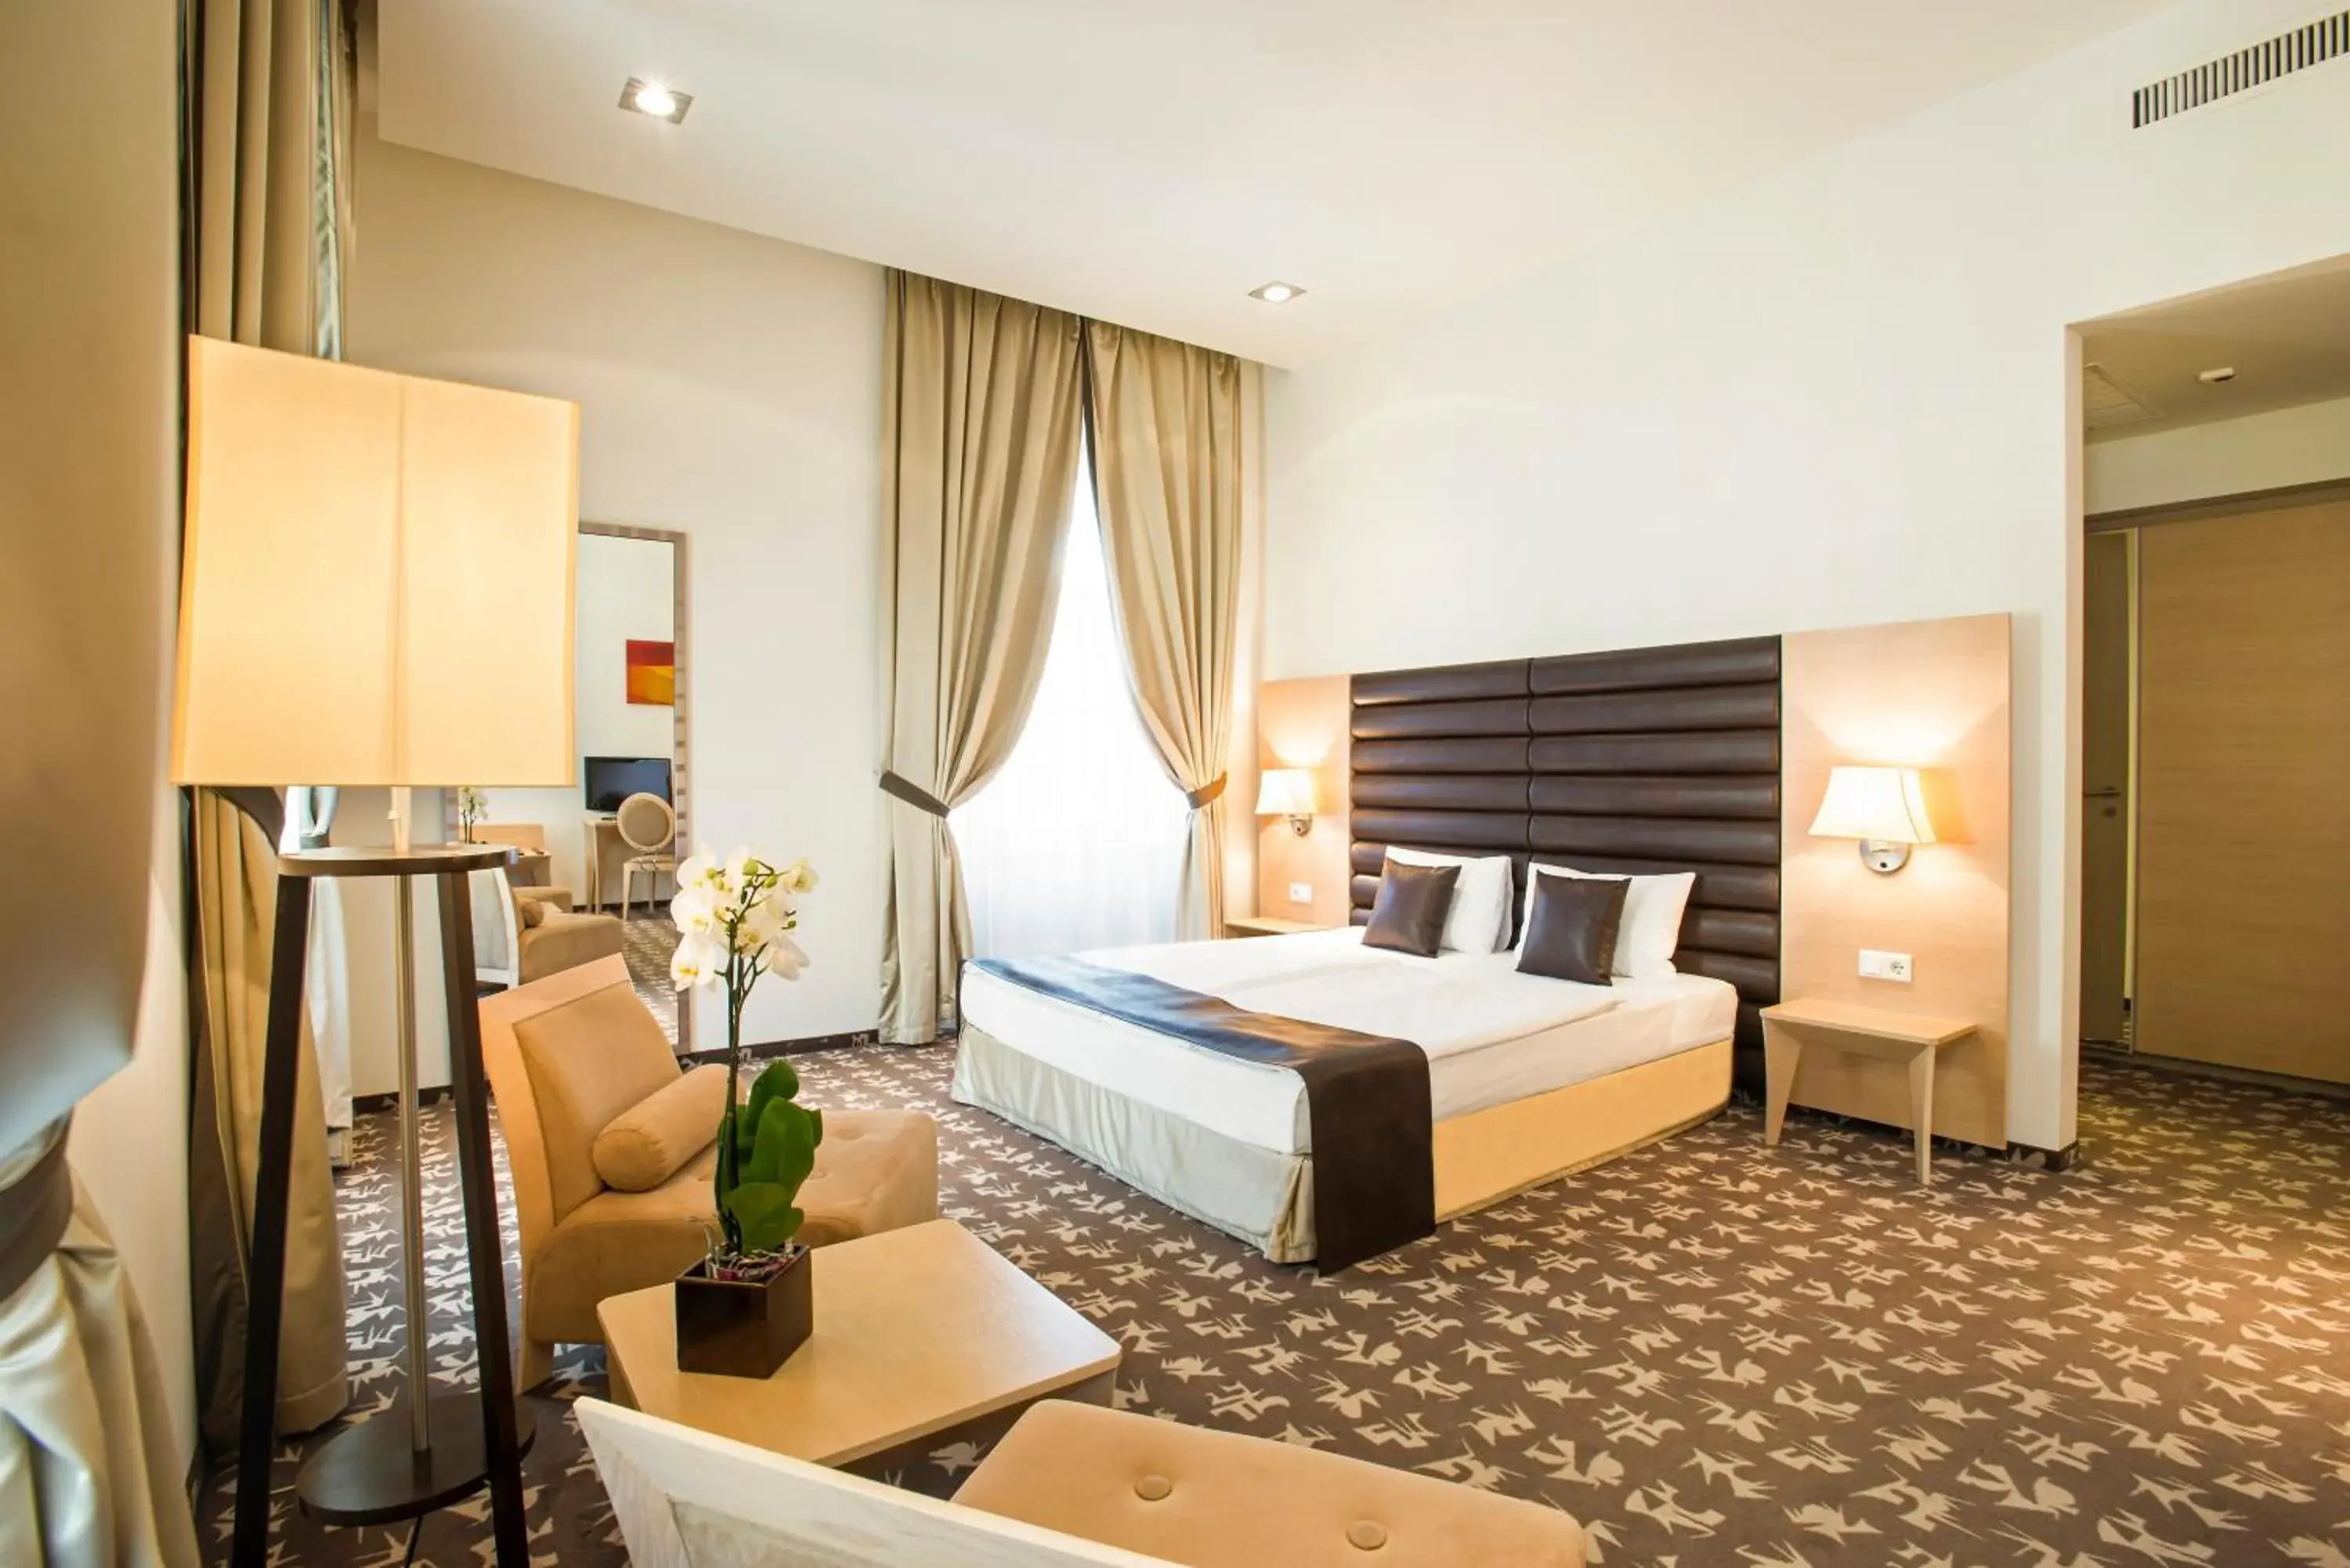 Bedroom in Buda Castle Hotel Budapest